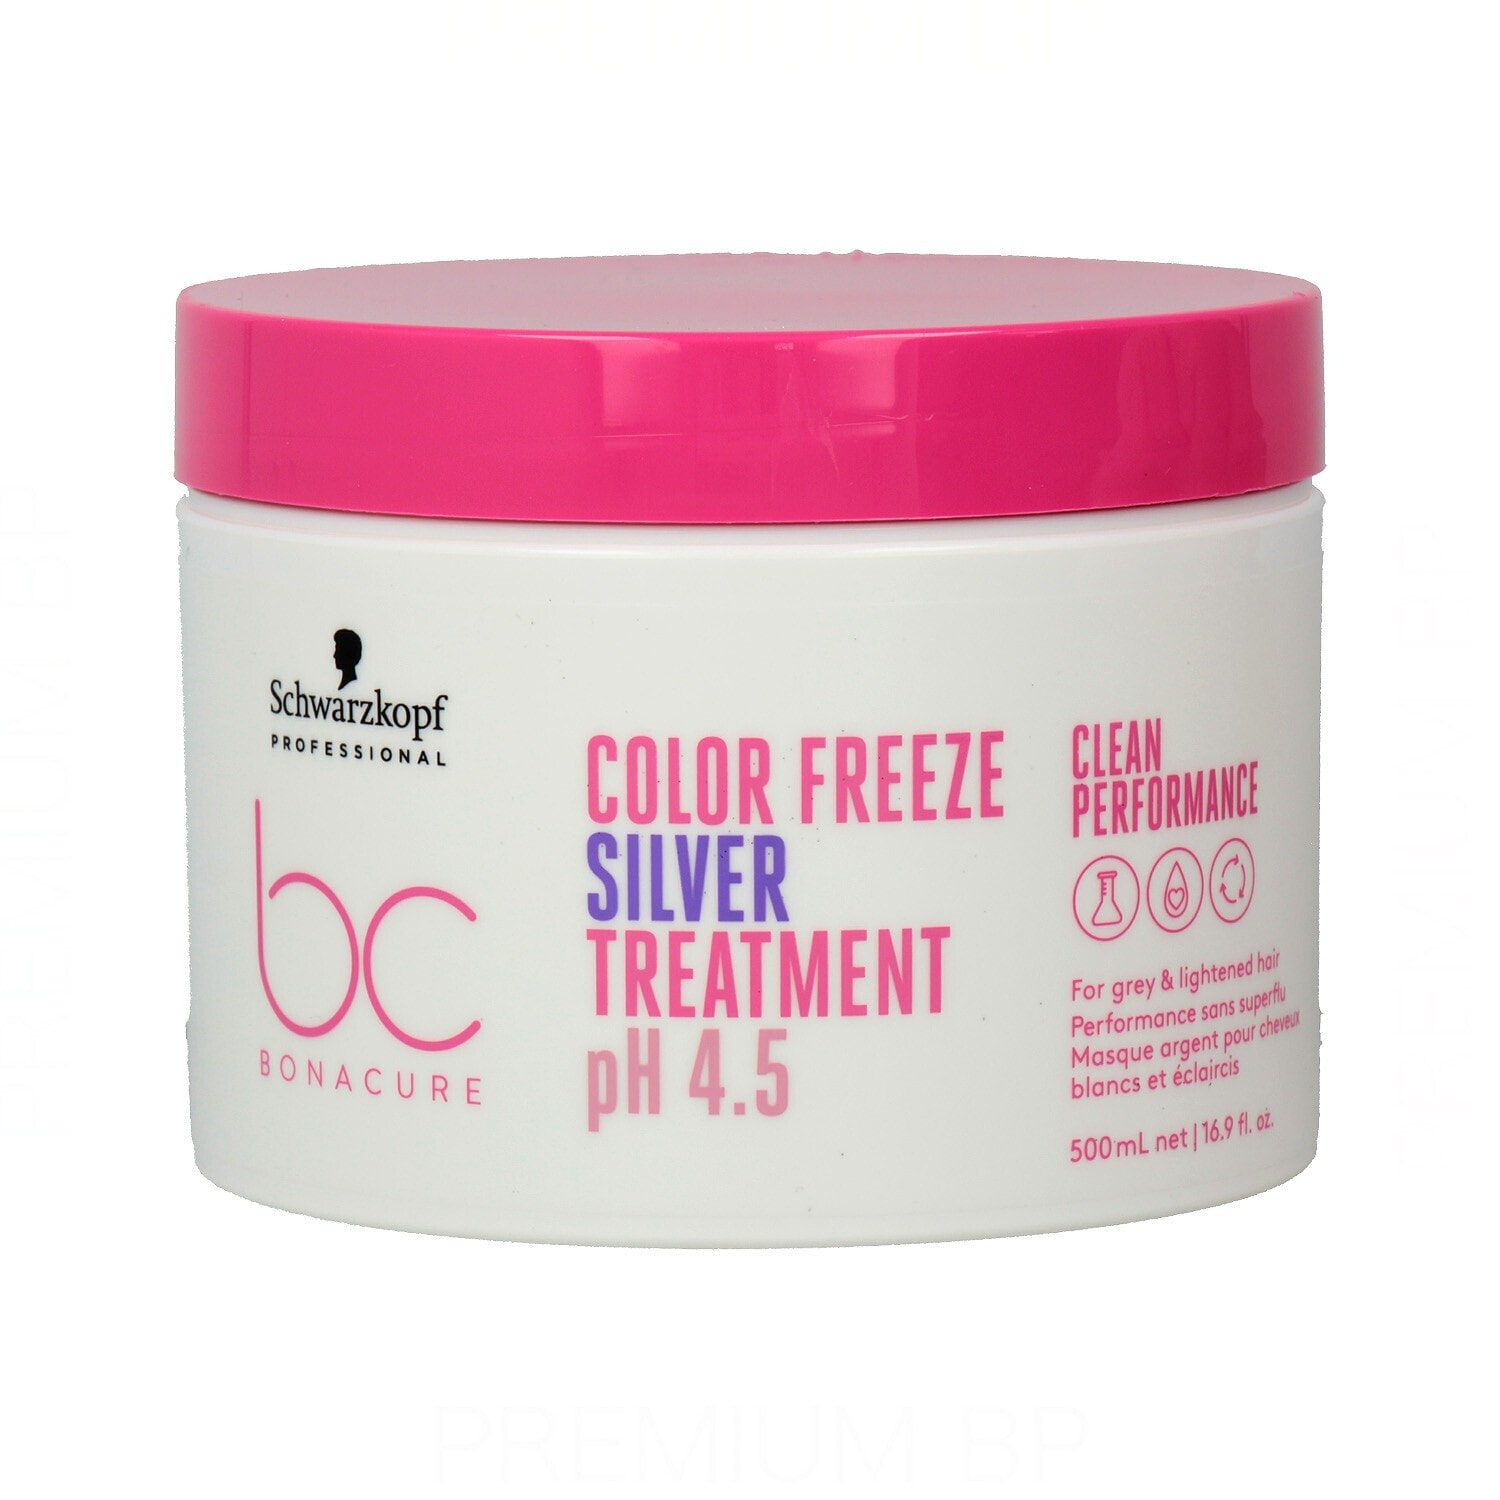 Schwarzkopf Bc Color Freeze Silver Treatment Интенсивно питательная и нейтрализующая теплые оттенки маска для светлых волос 500 мл